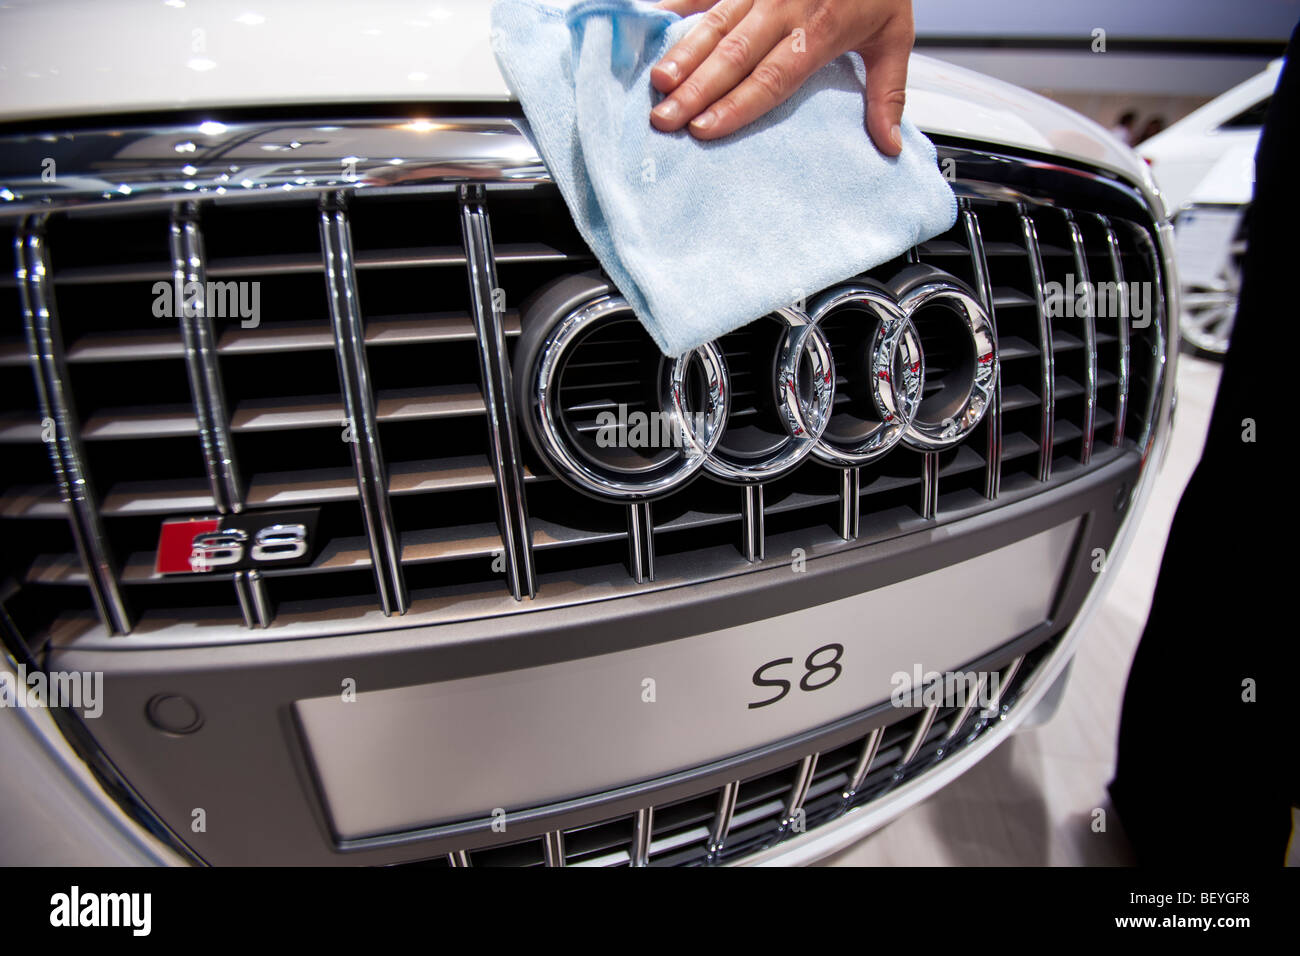 Ein Mitarbeiter reinigt ein Audi S8 Automobil bei